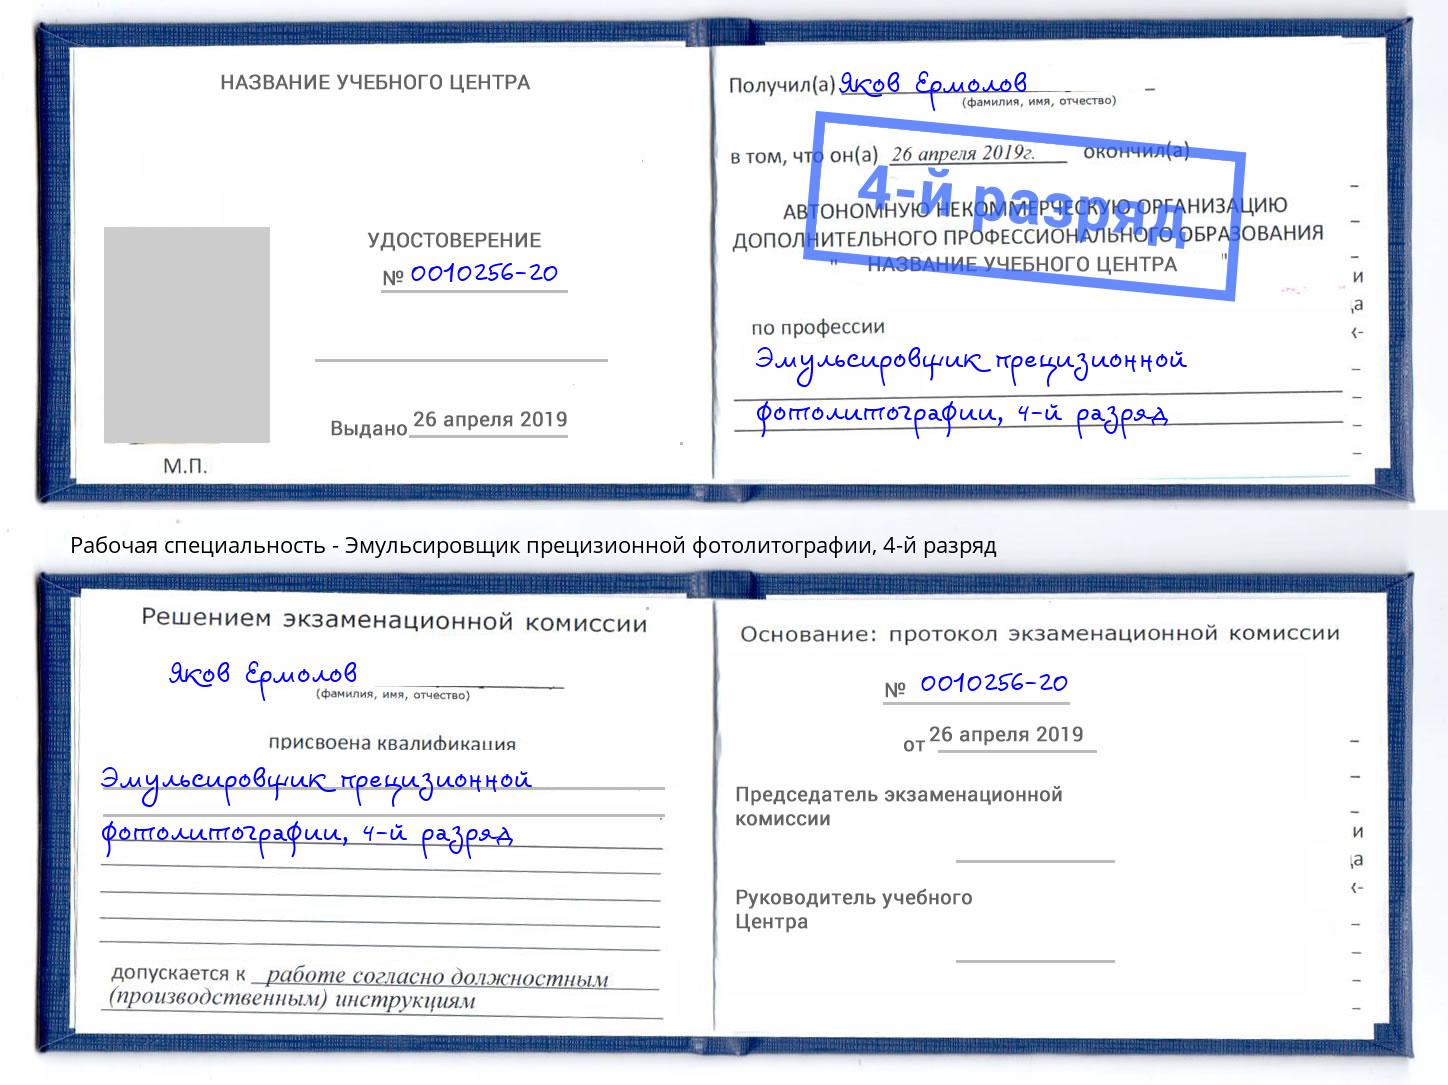 корочка 4-й разряд Эмульсировщик прецизионной фотолитографии Новосибирск